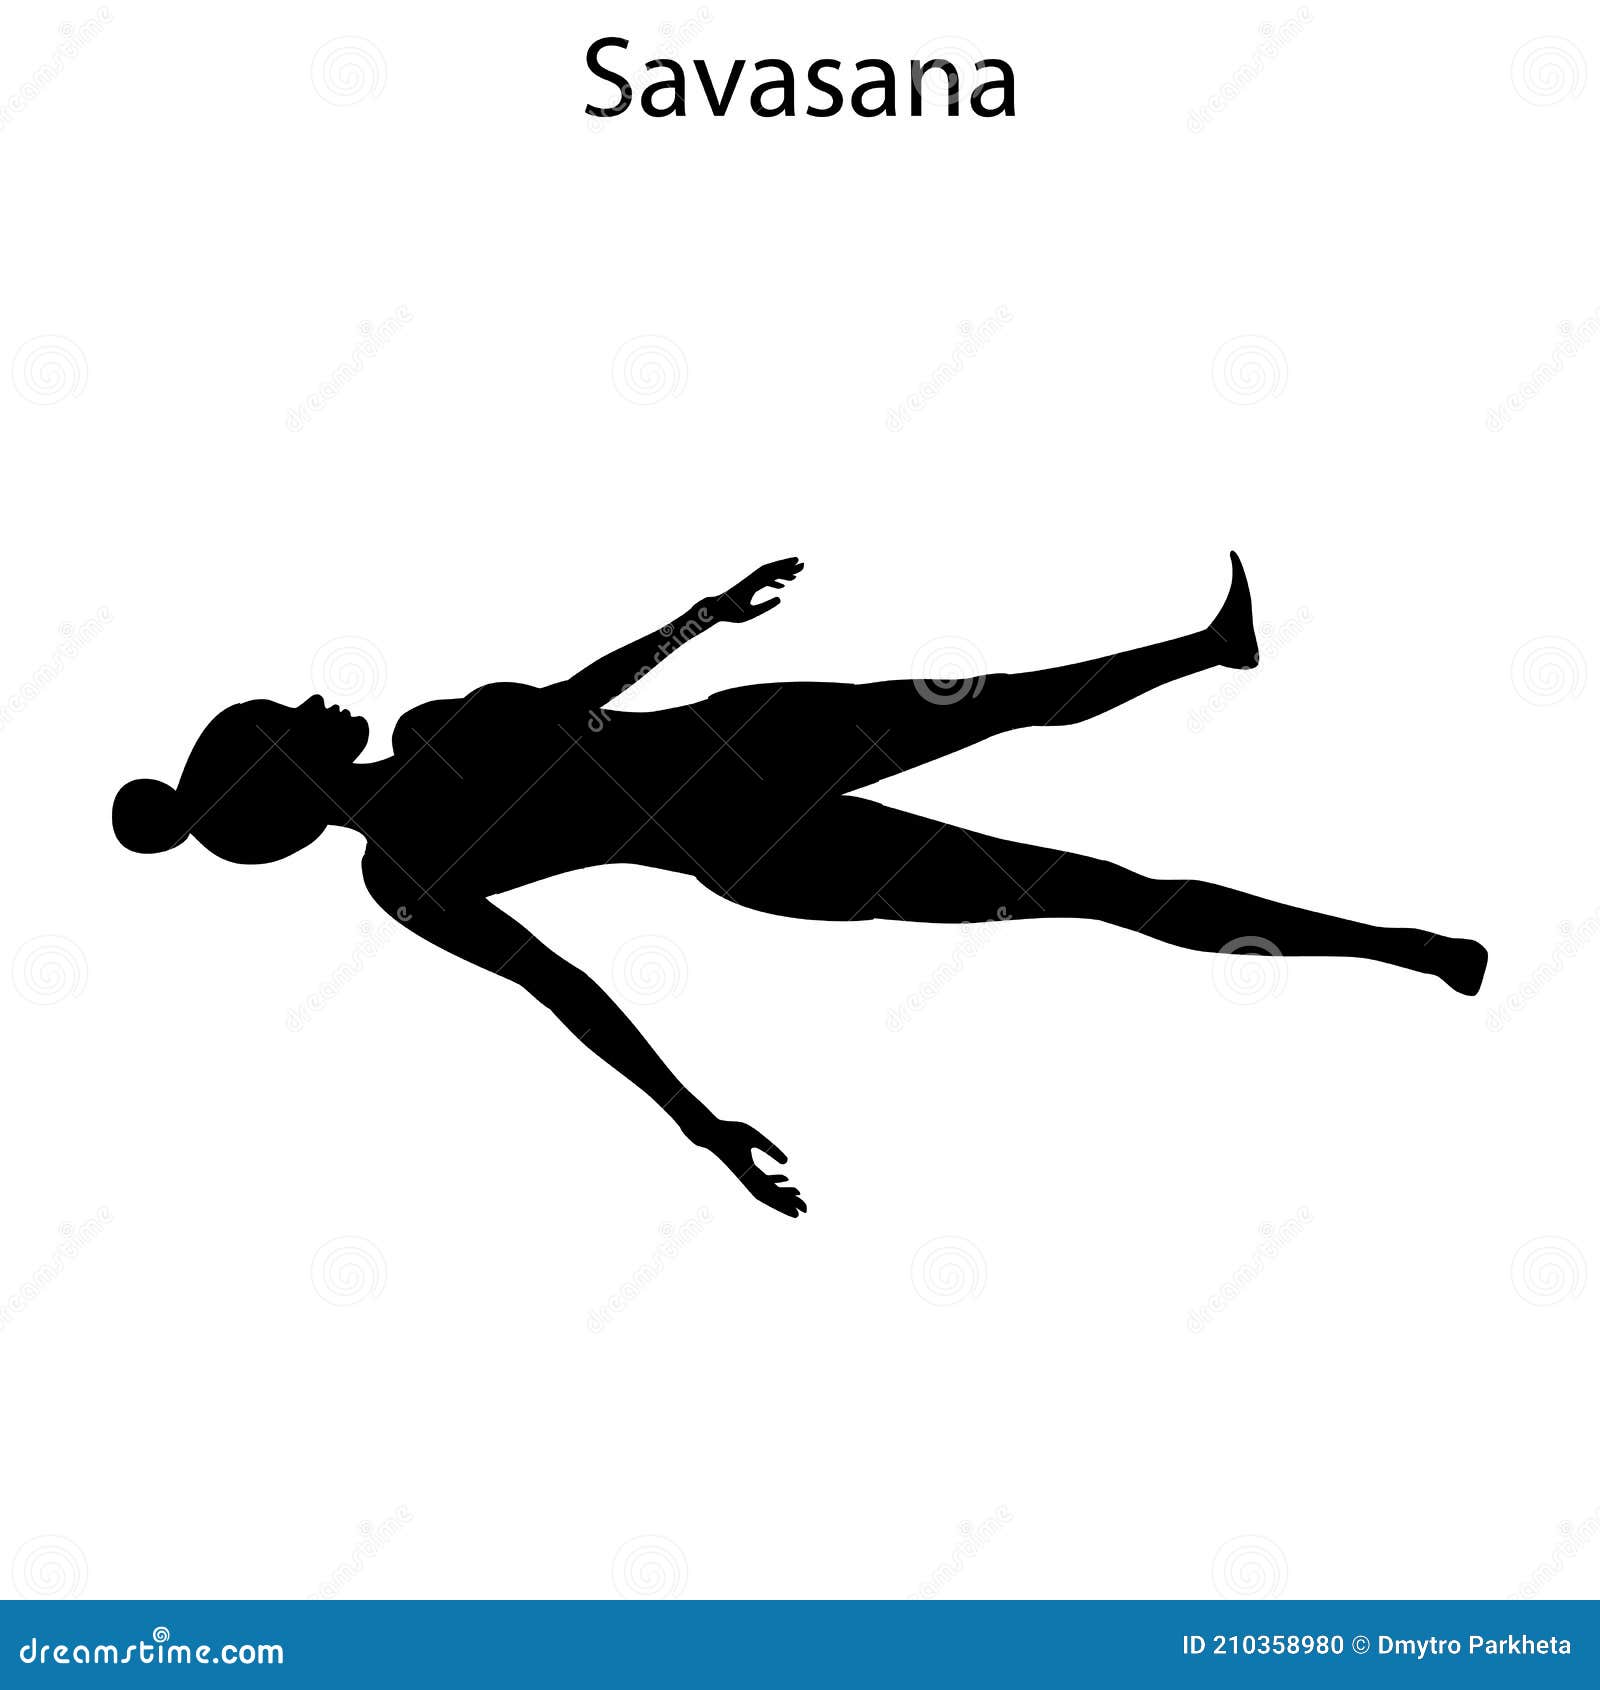 Savasana Cliparts, Stock Vector and Royalty Free Savasana Illustrations